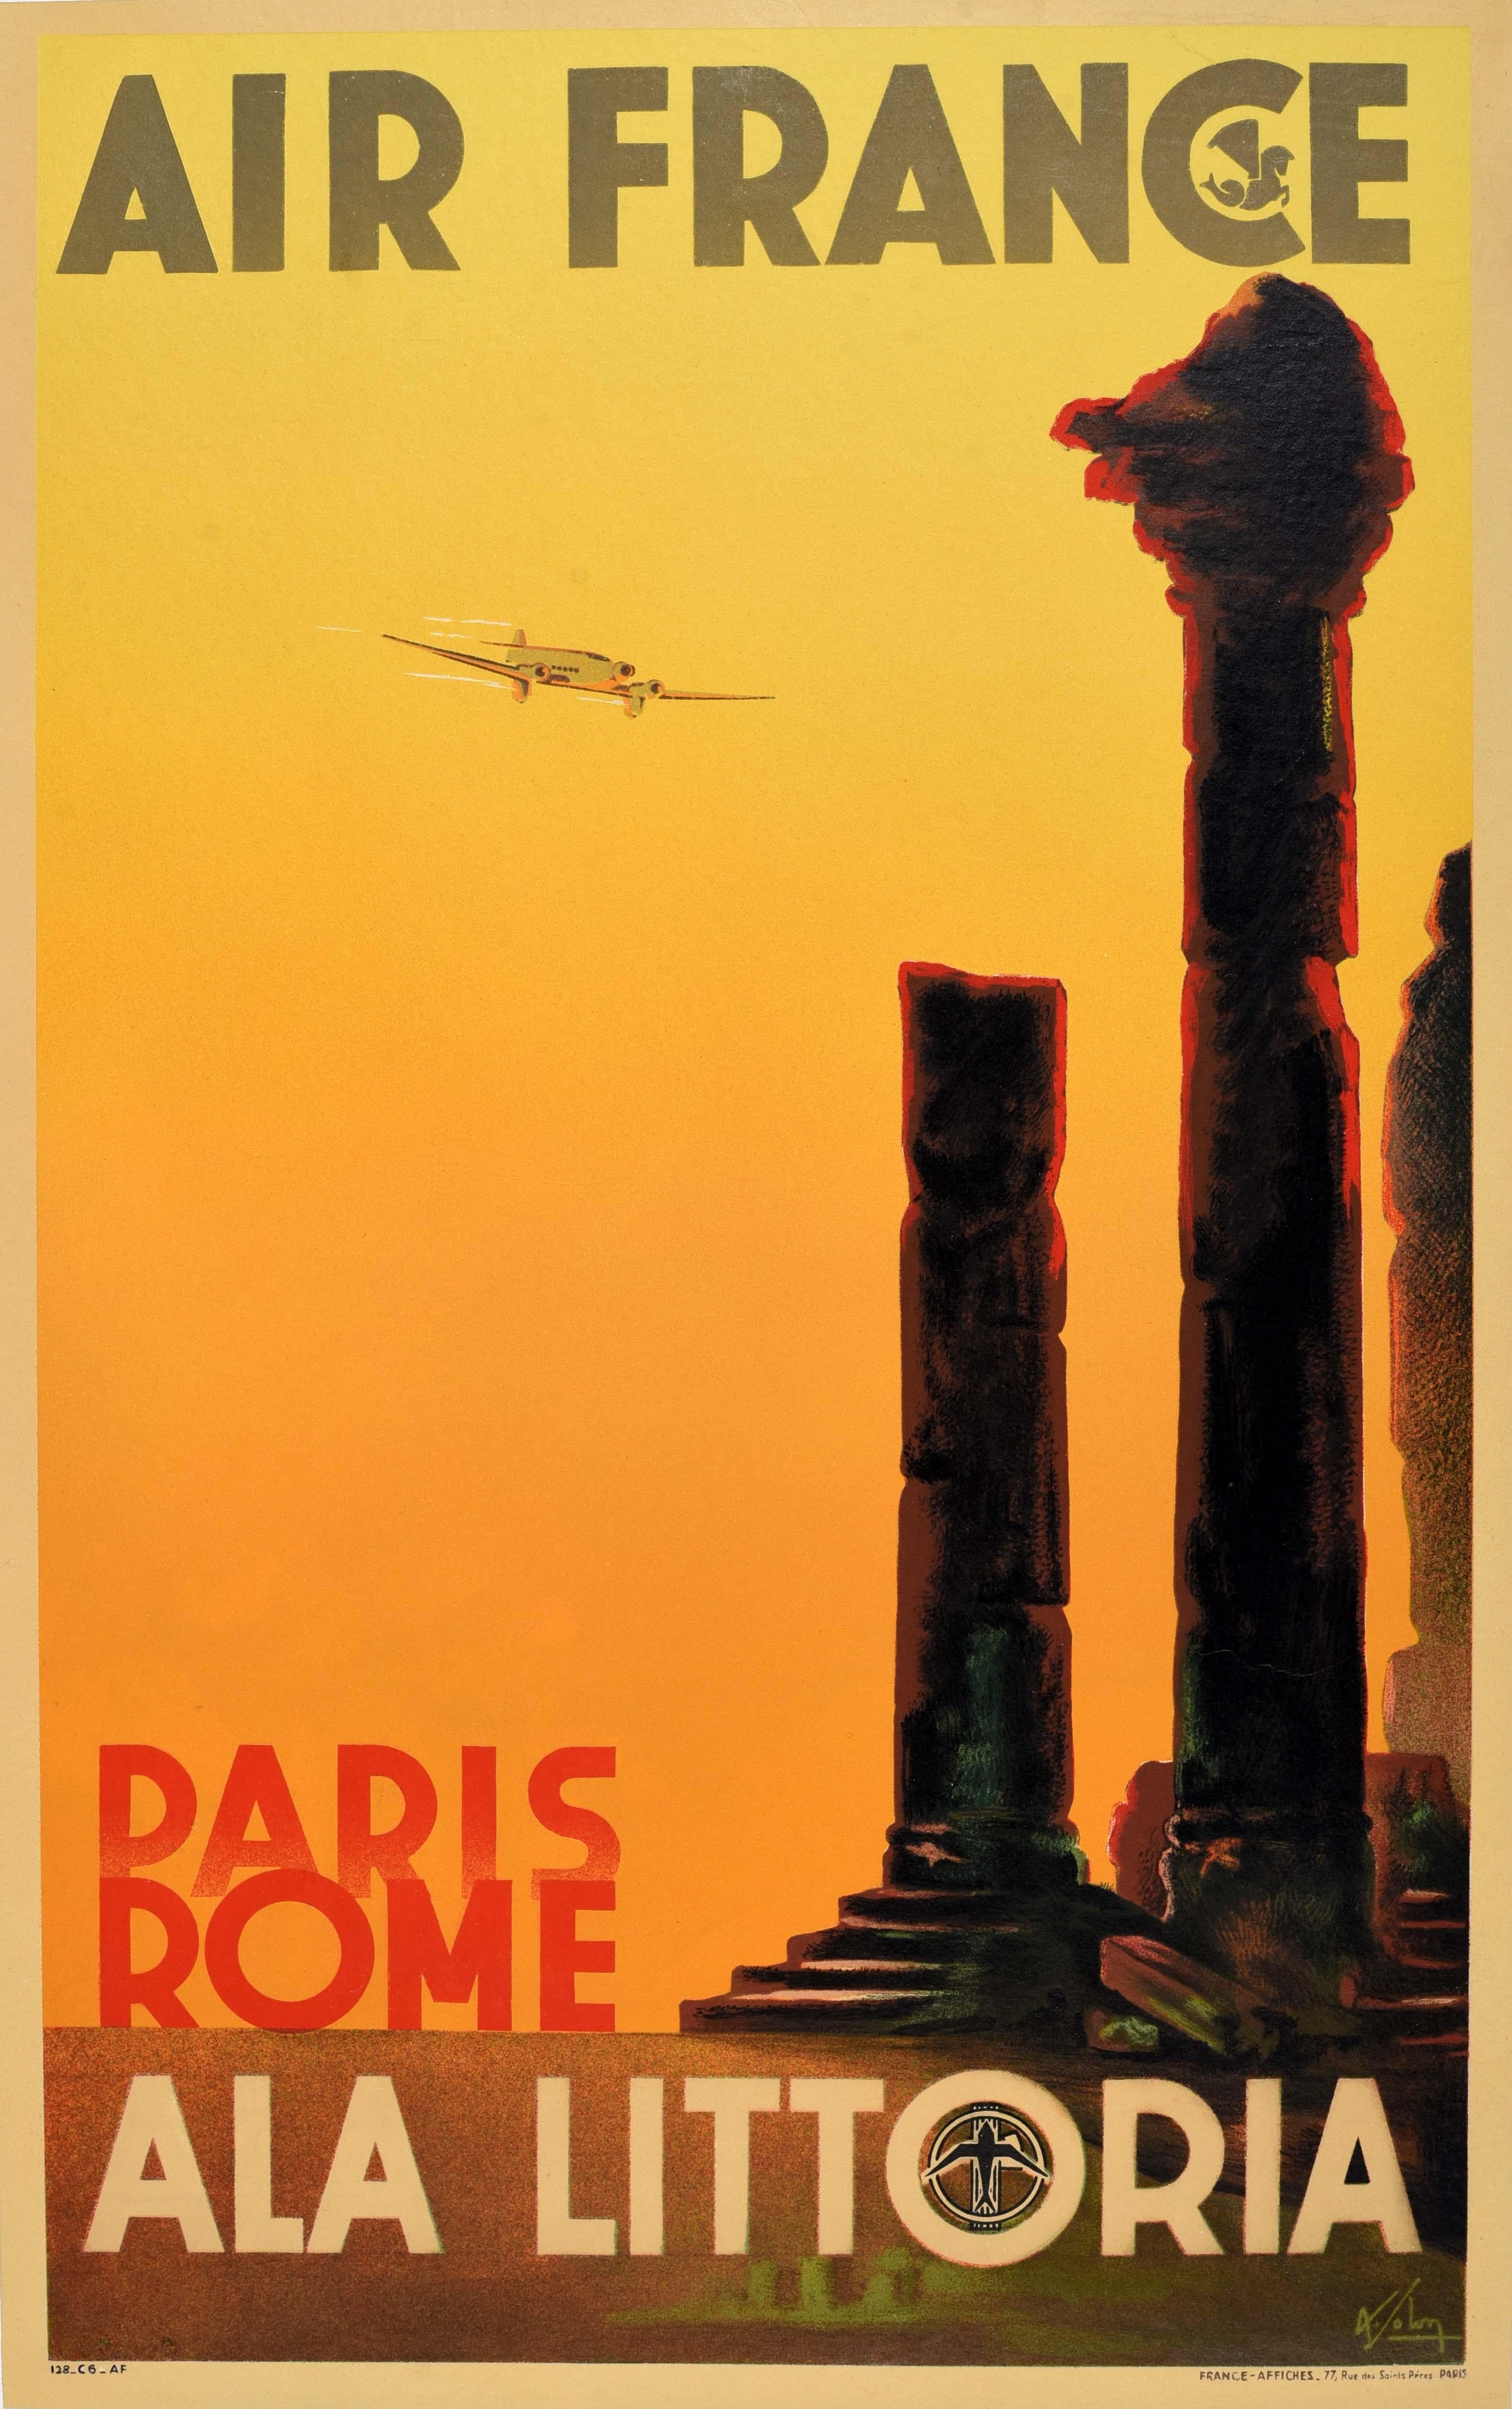 Original Vintage-Reiseplakat für Air France Paris Rom Ala Littoria mit einem atemberaubenden Design von Albert Solon (1897-1973), das antike Steinsäulen zeigt, die vor dem Hintergrund eines orangefarbenen Himmels emporragen, ein Flugzeug, das mit